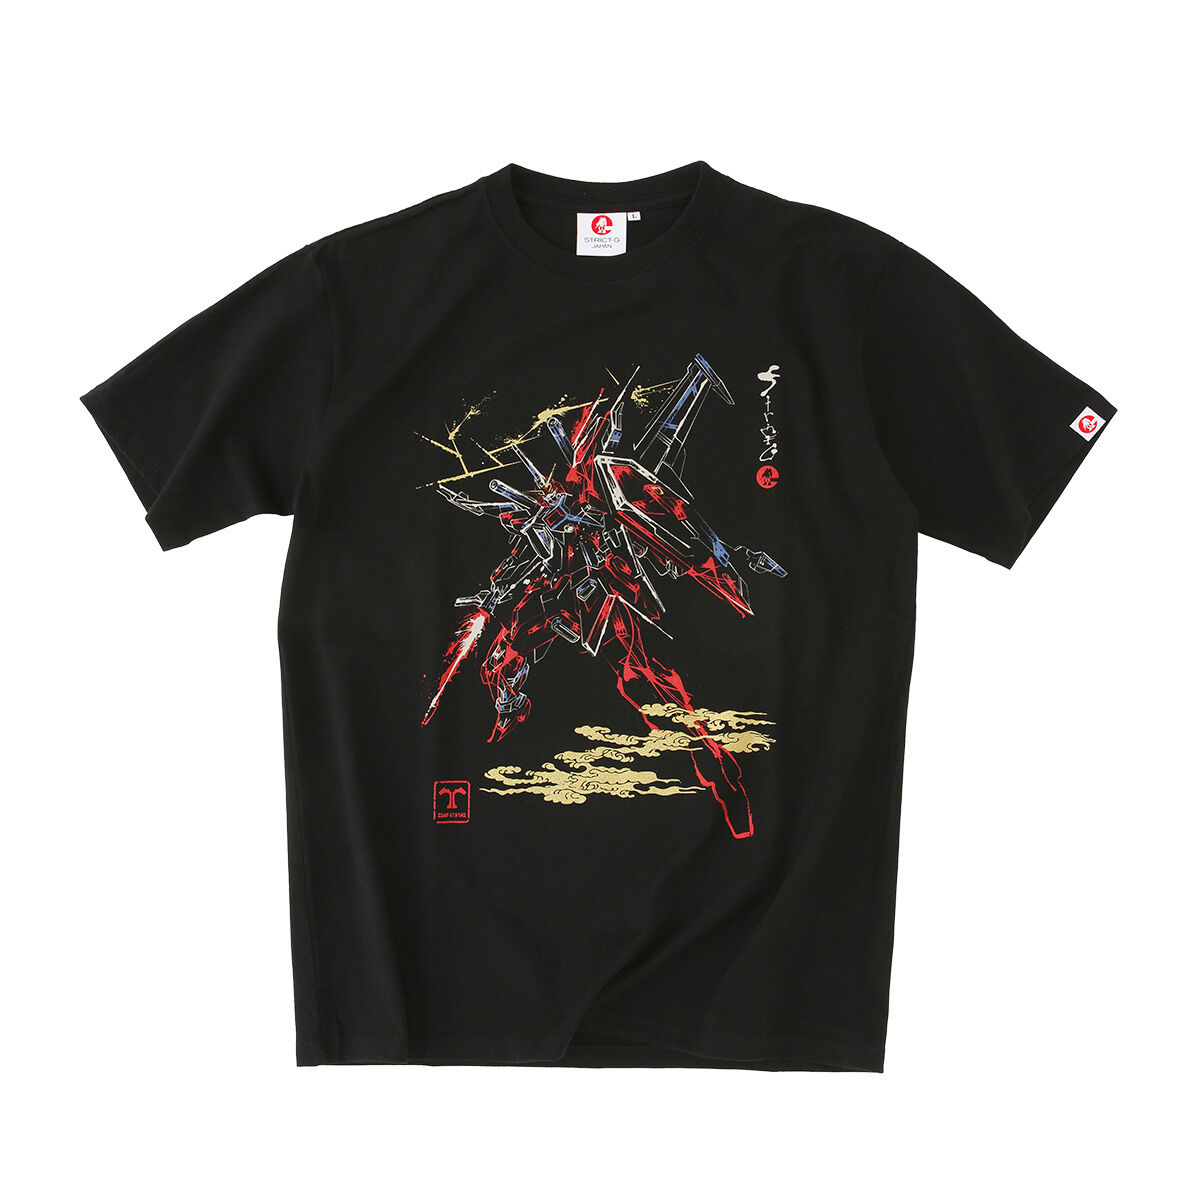 STRICT-G JAPAN『機動戦士ガンダムSEED FREEDOM』Tシャツ インフィニットジャスティス弐式 / S メンズファッション STRICT-G